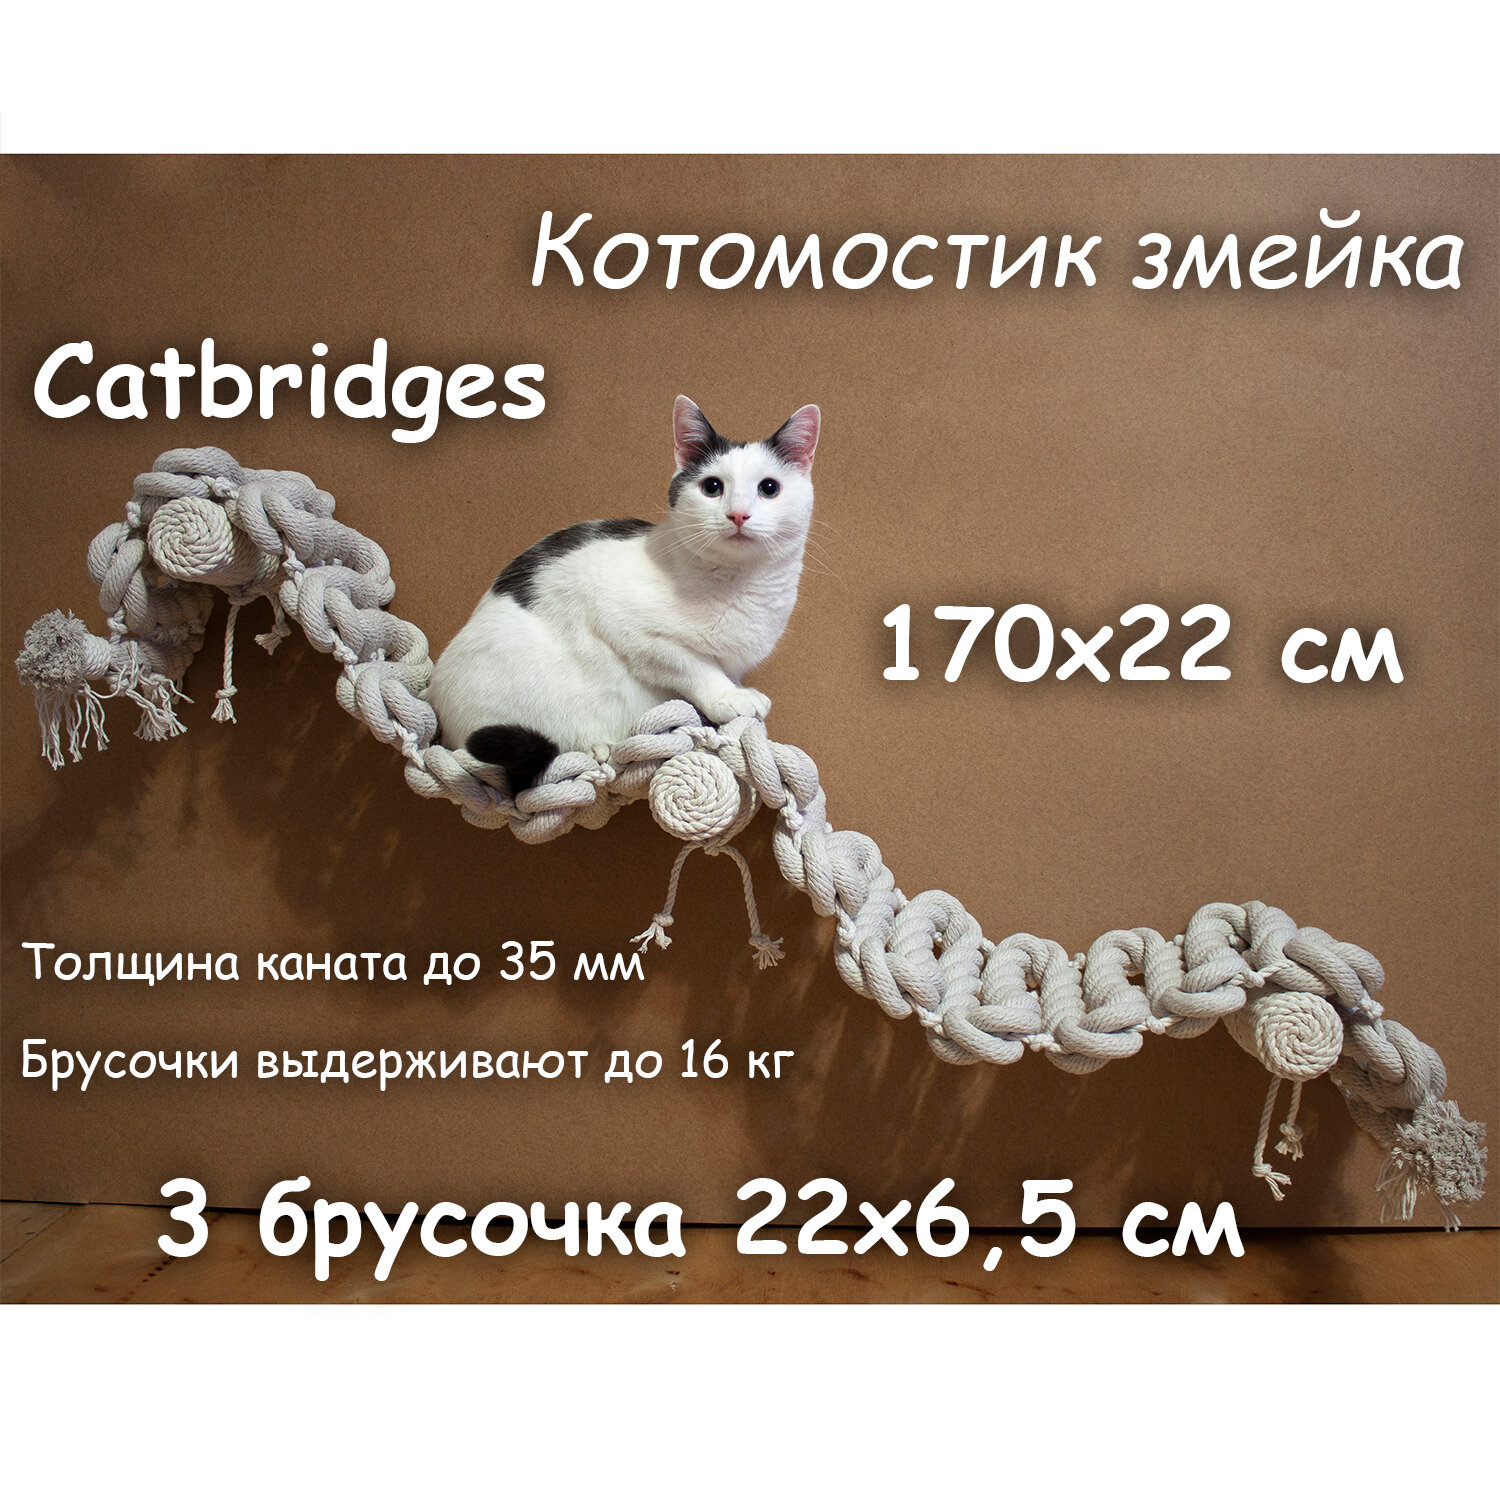 Когтеточка для кошки из хлопка . 170х22 см, 3 брусочка . канат 32 мм, шпилька 8 мм . Котомостик Змейка от Catbridges . Белый . Лежанка .